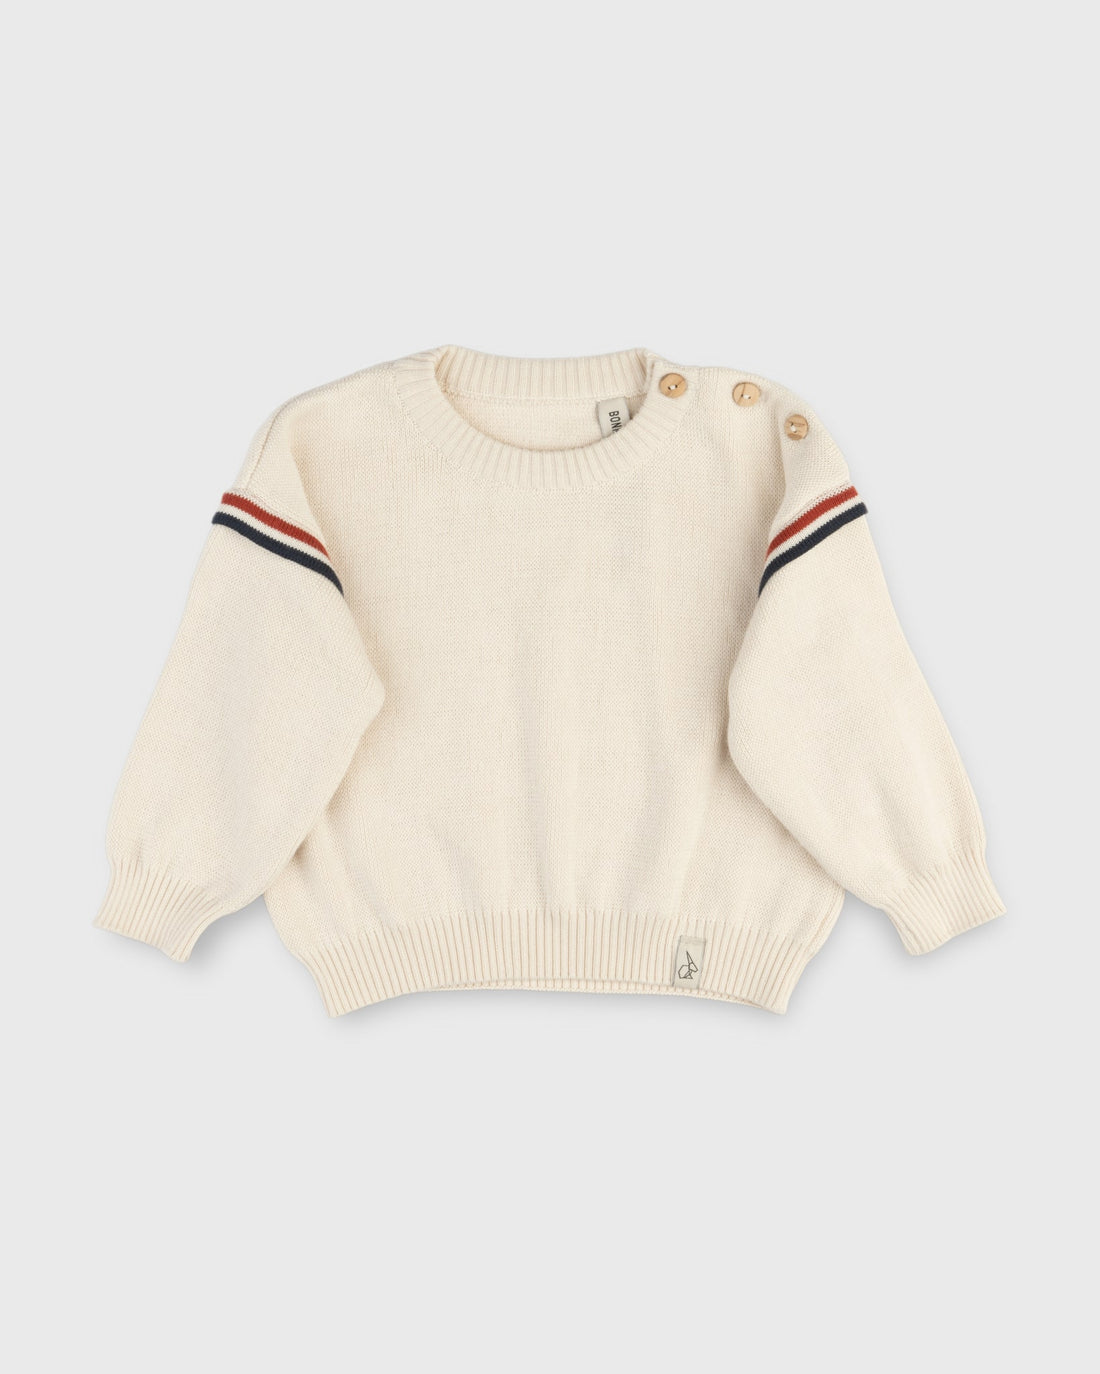 RAFFA knit sweater